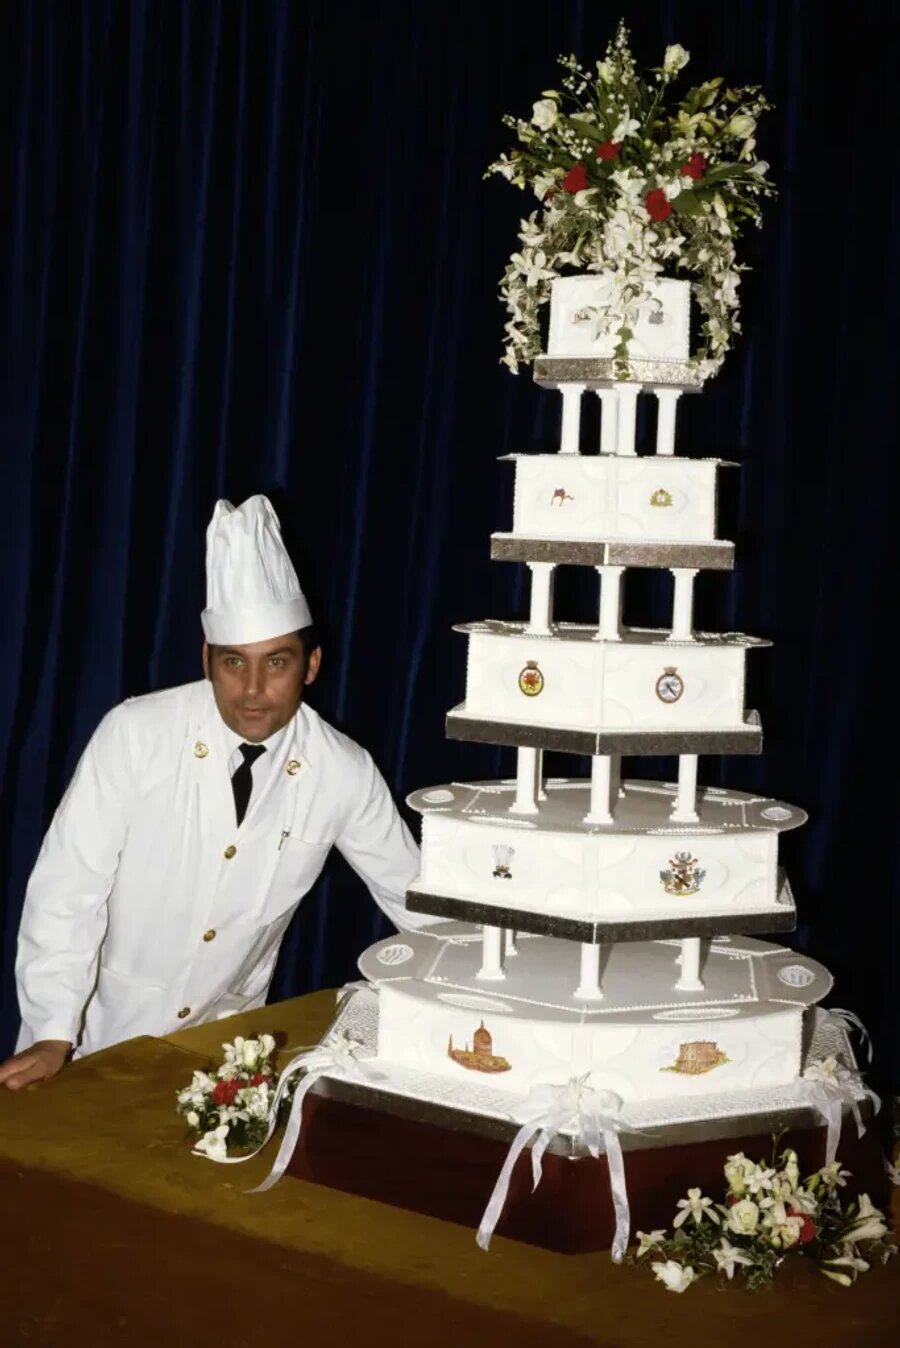 Кусок торта со свадьбы принца Чарльза и принцессы Дианы выставлен на торги, спустя 40 лет